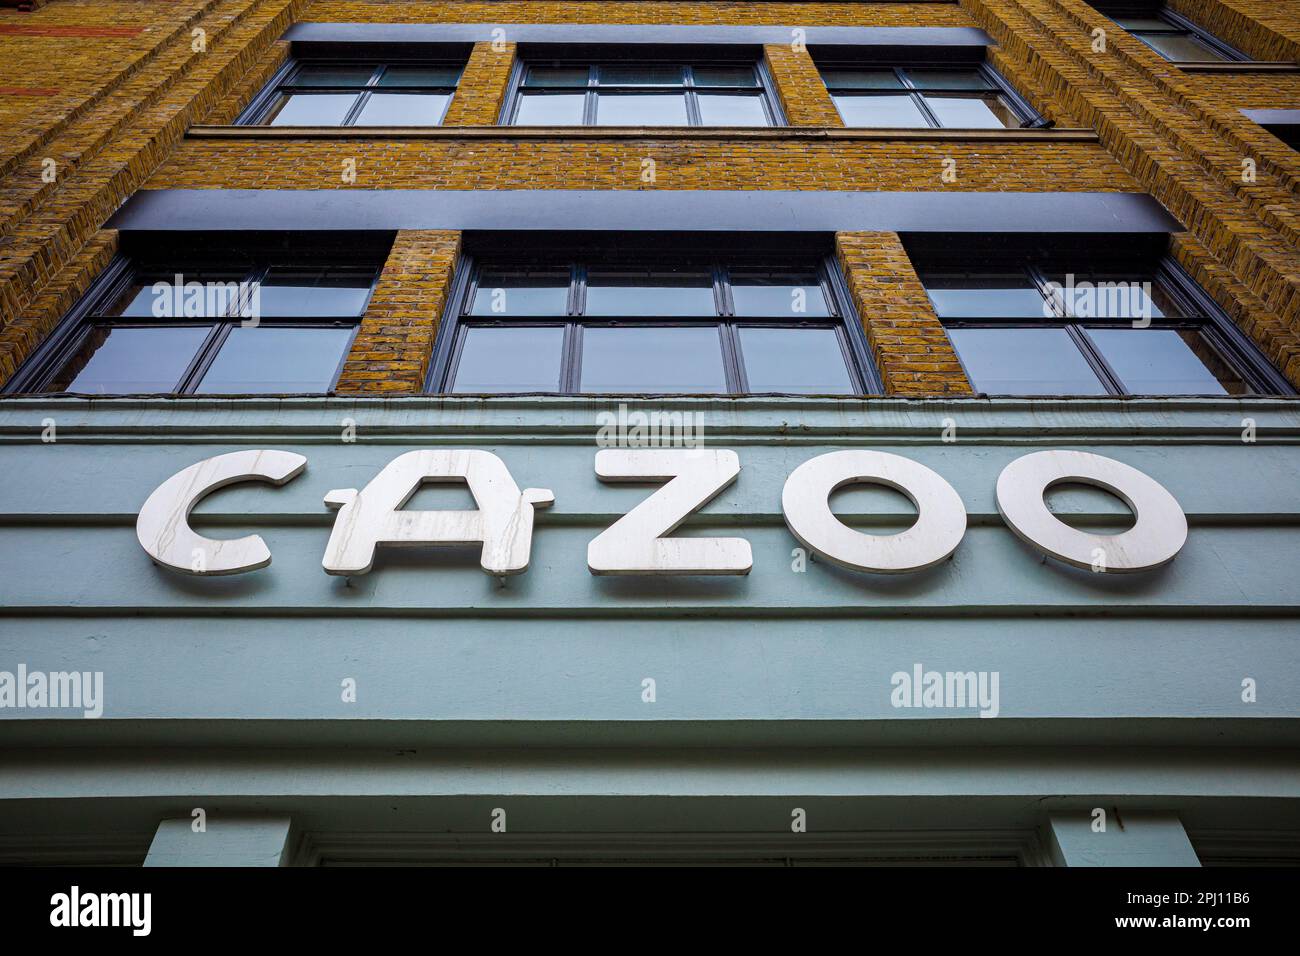 Cazoo HQ in der Chalton Street in Euston, London. Der Hauptsitz des Unternehmens Cazoo in London. Cazoo ist ein britischer Online-Autohändler. Stockfoto